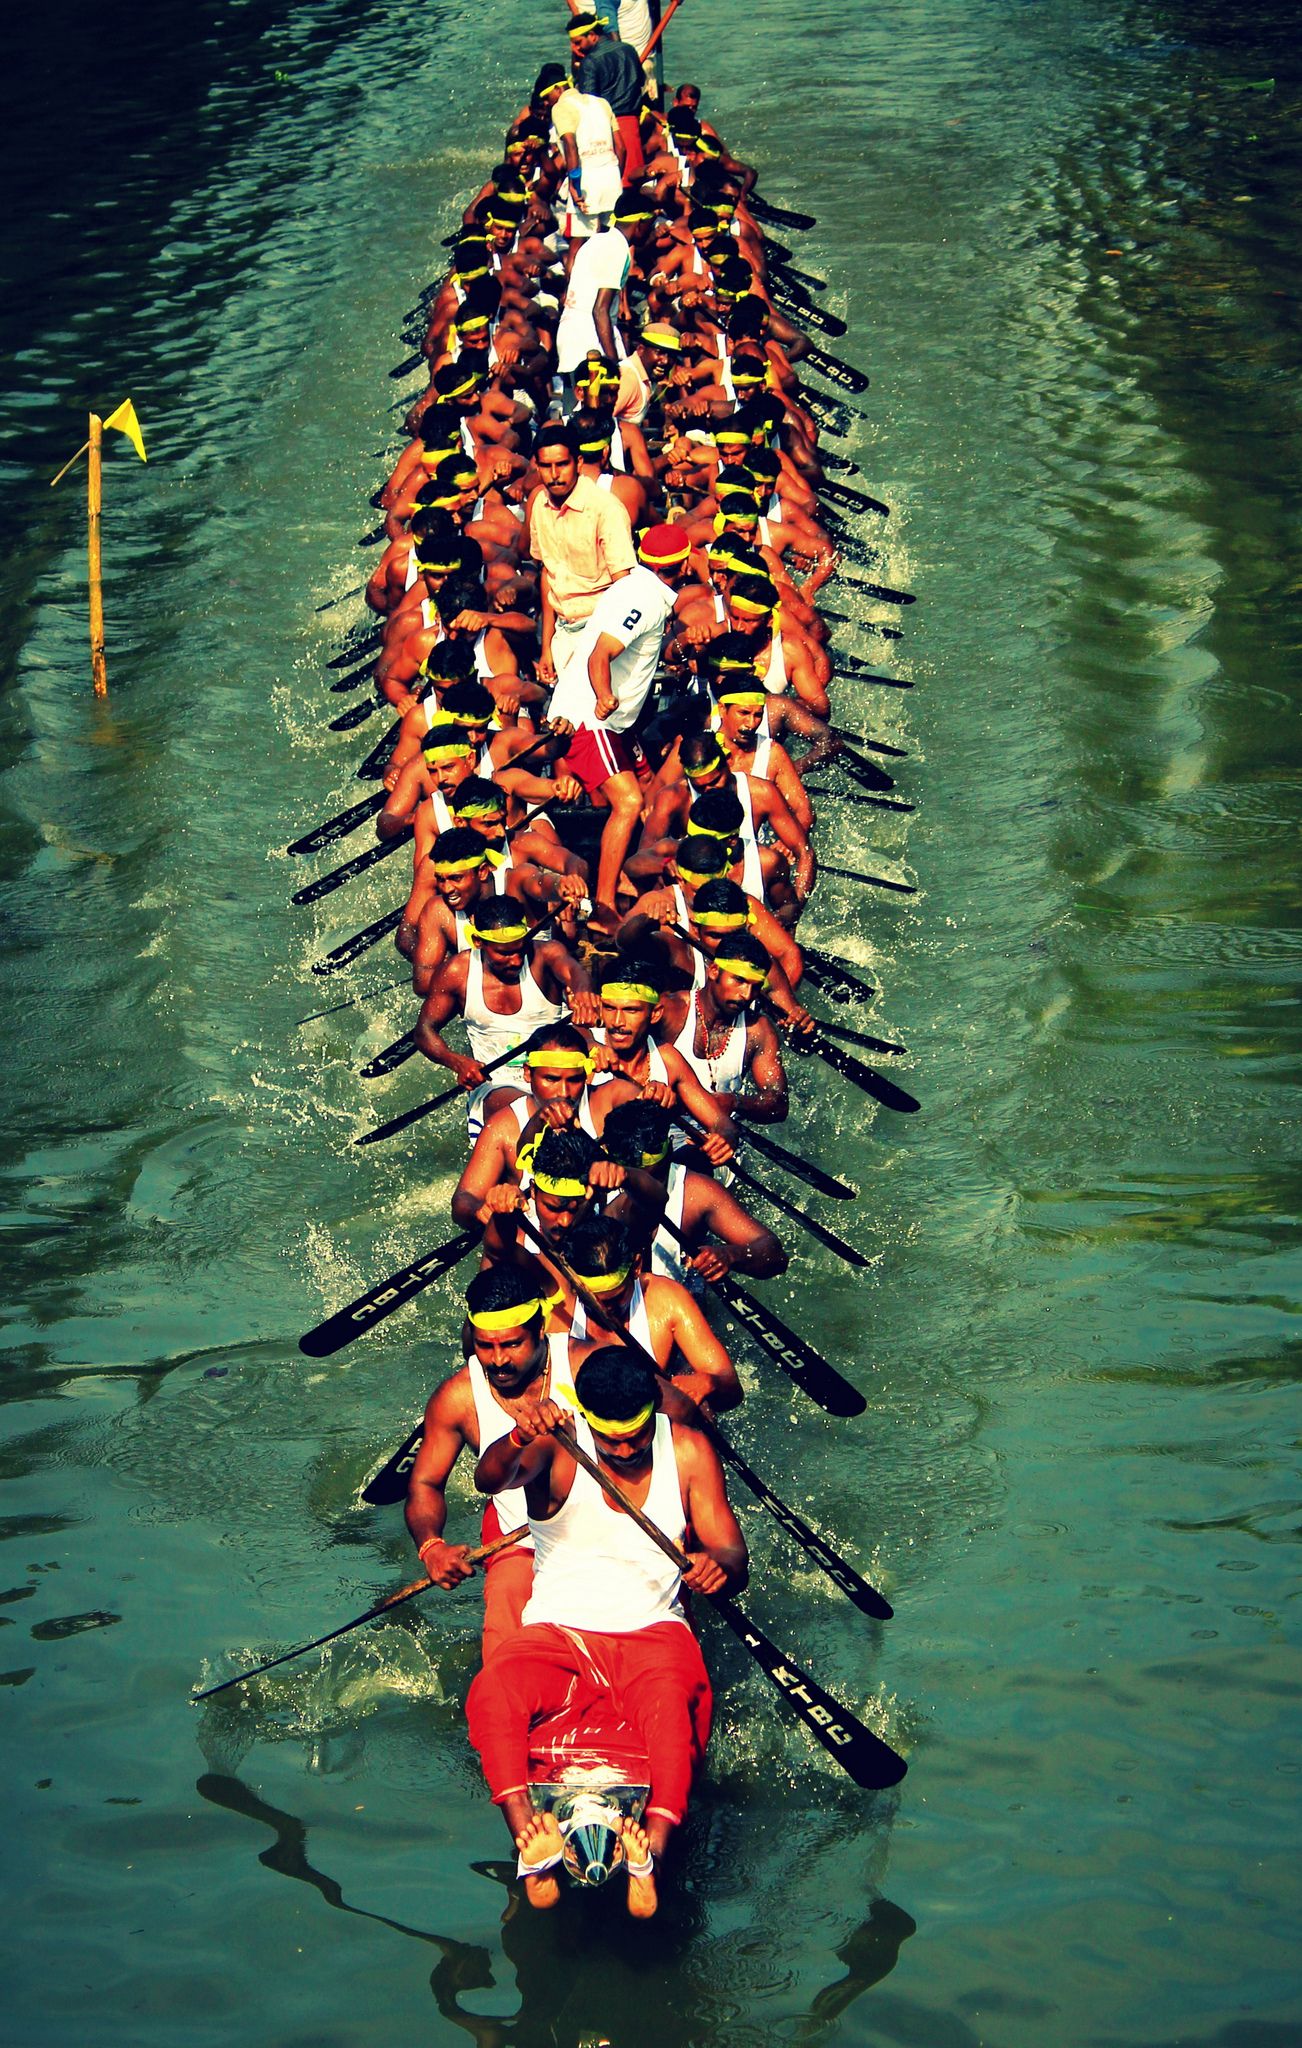 Kerala Boat Race #Travel. Kerala travel, Kerala backwaters, India photography